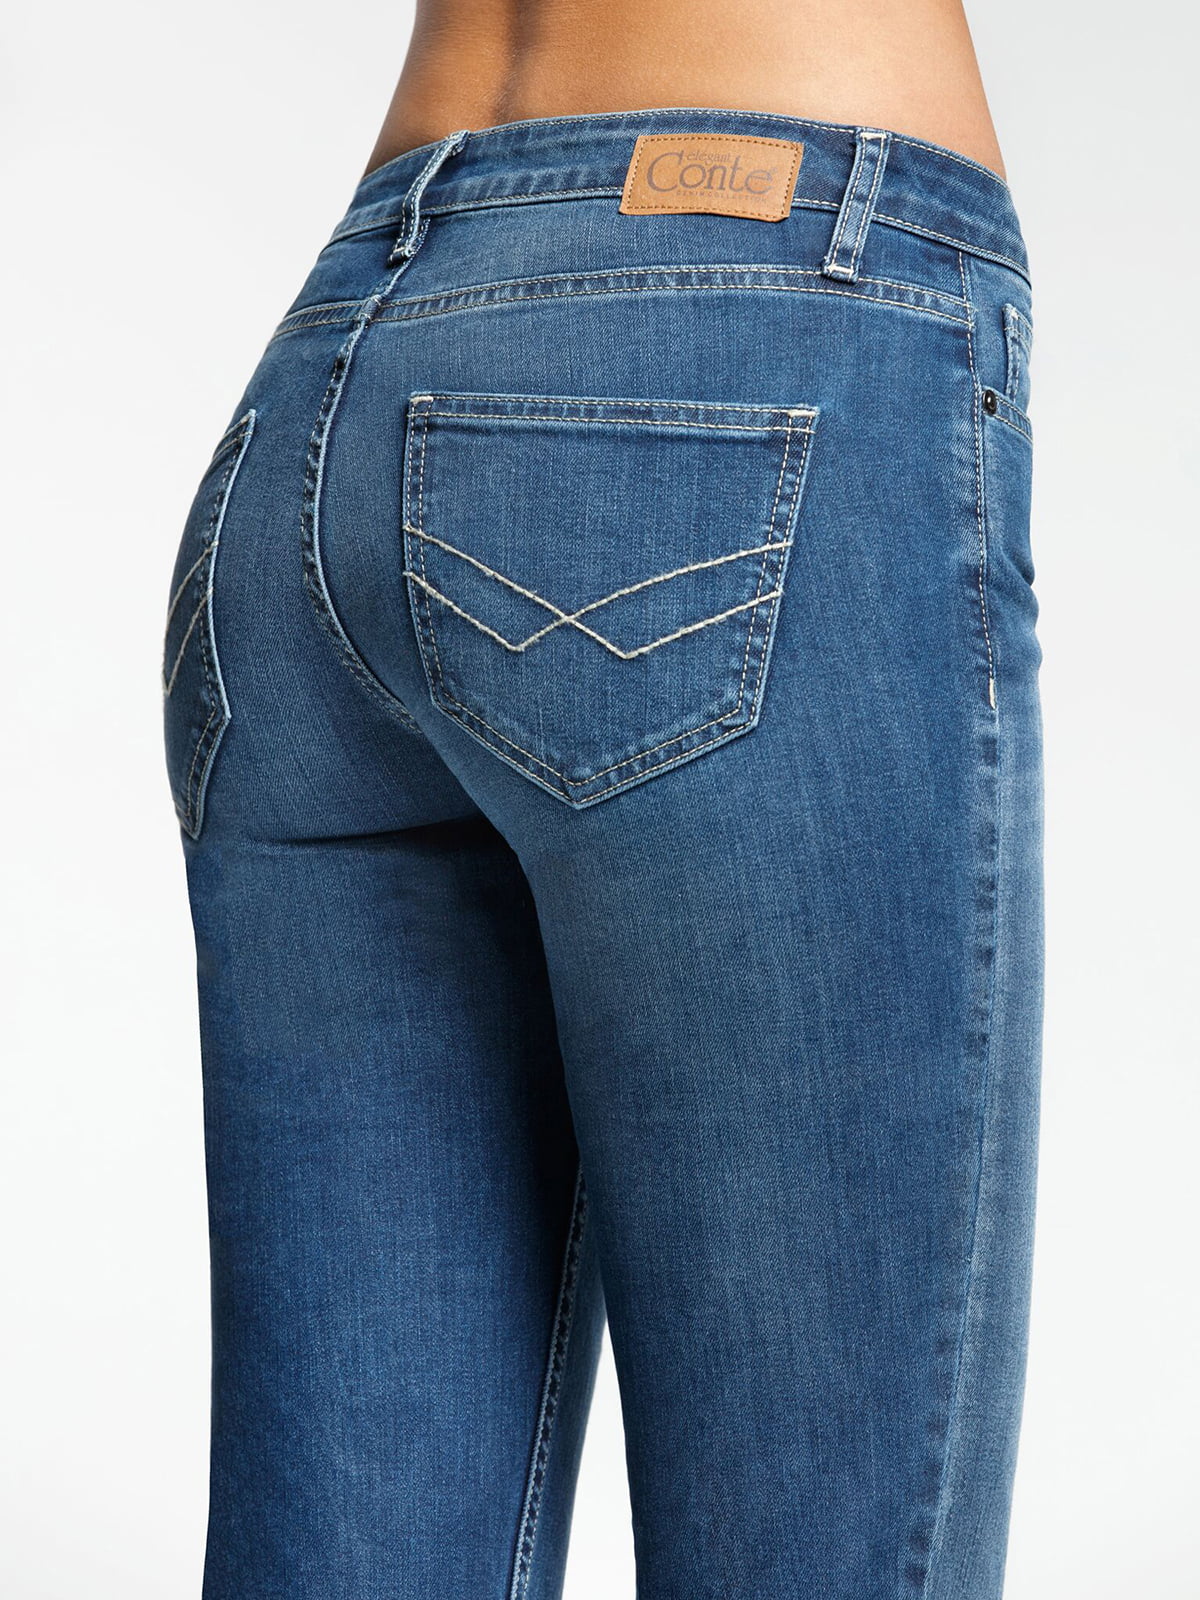 Купить джинсы 48 размера. Джинсы Conte Elegant 2091/49123. 2091-49123 Conte брюки женские. Джинсы женские. Классические джинсы женские.